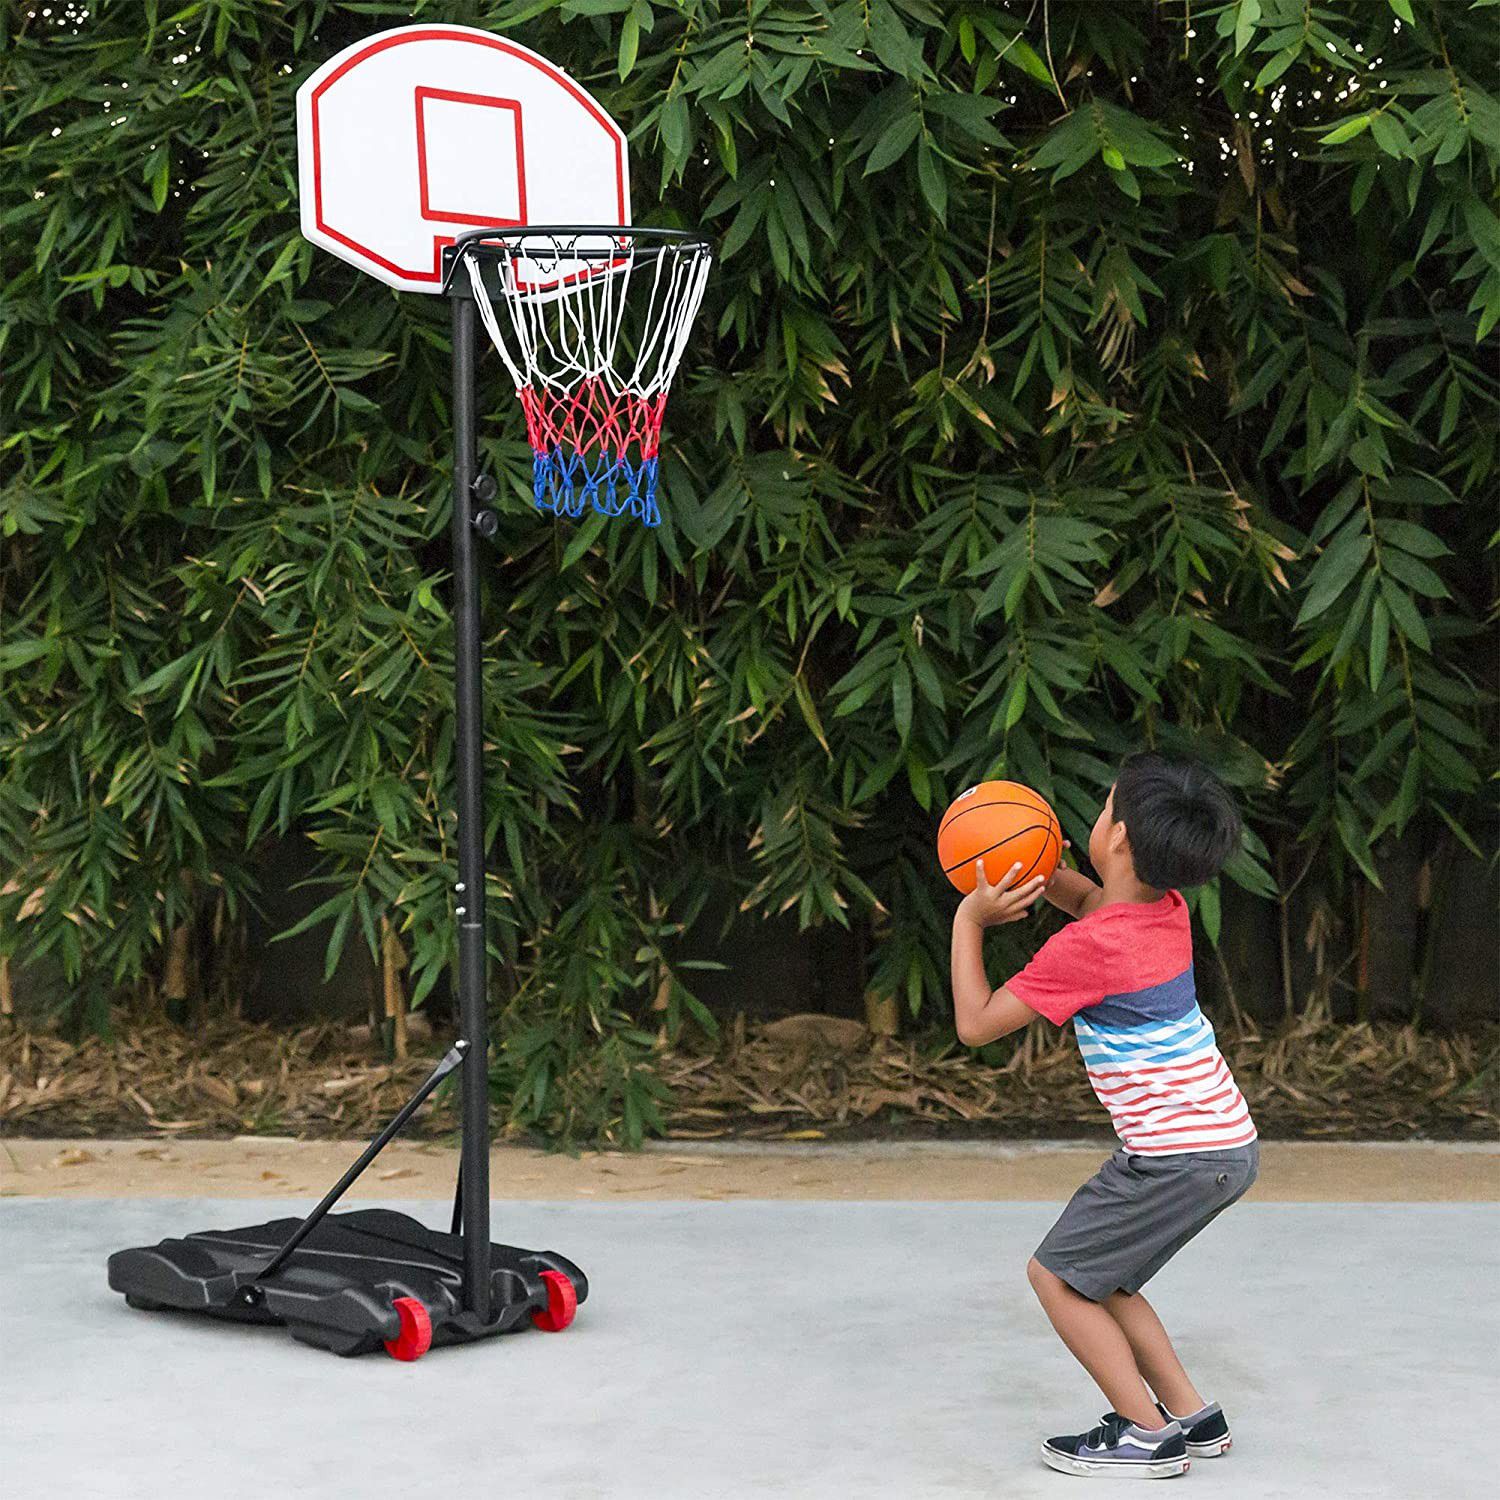 Adjustable Basketball Hoop with Blackboard & Wheels for Kids, Portable, Indoor/Outdoor